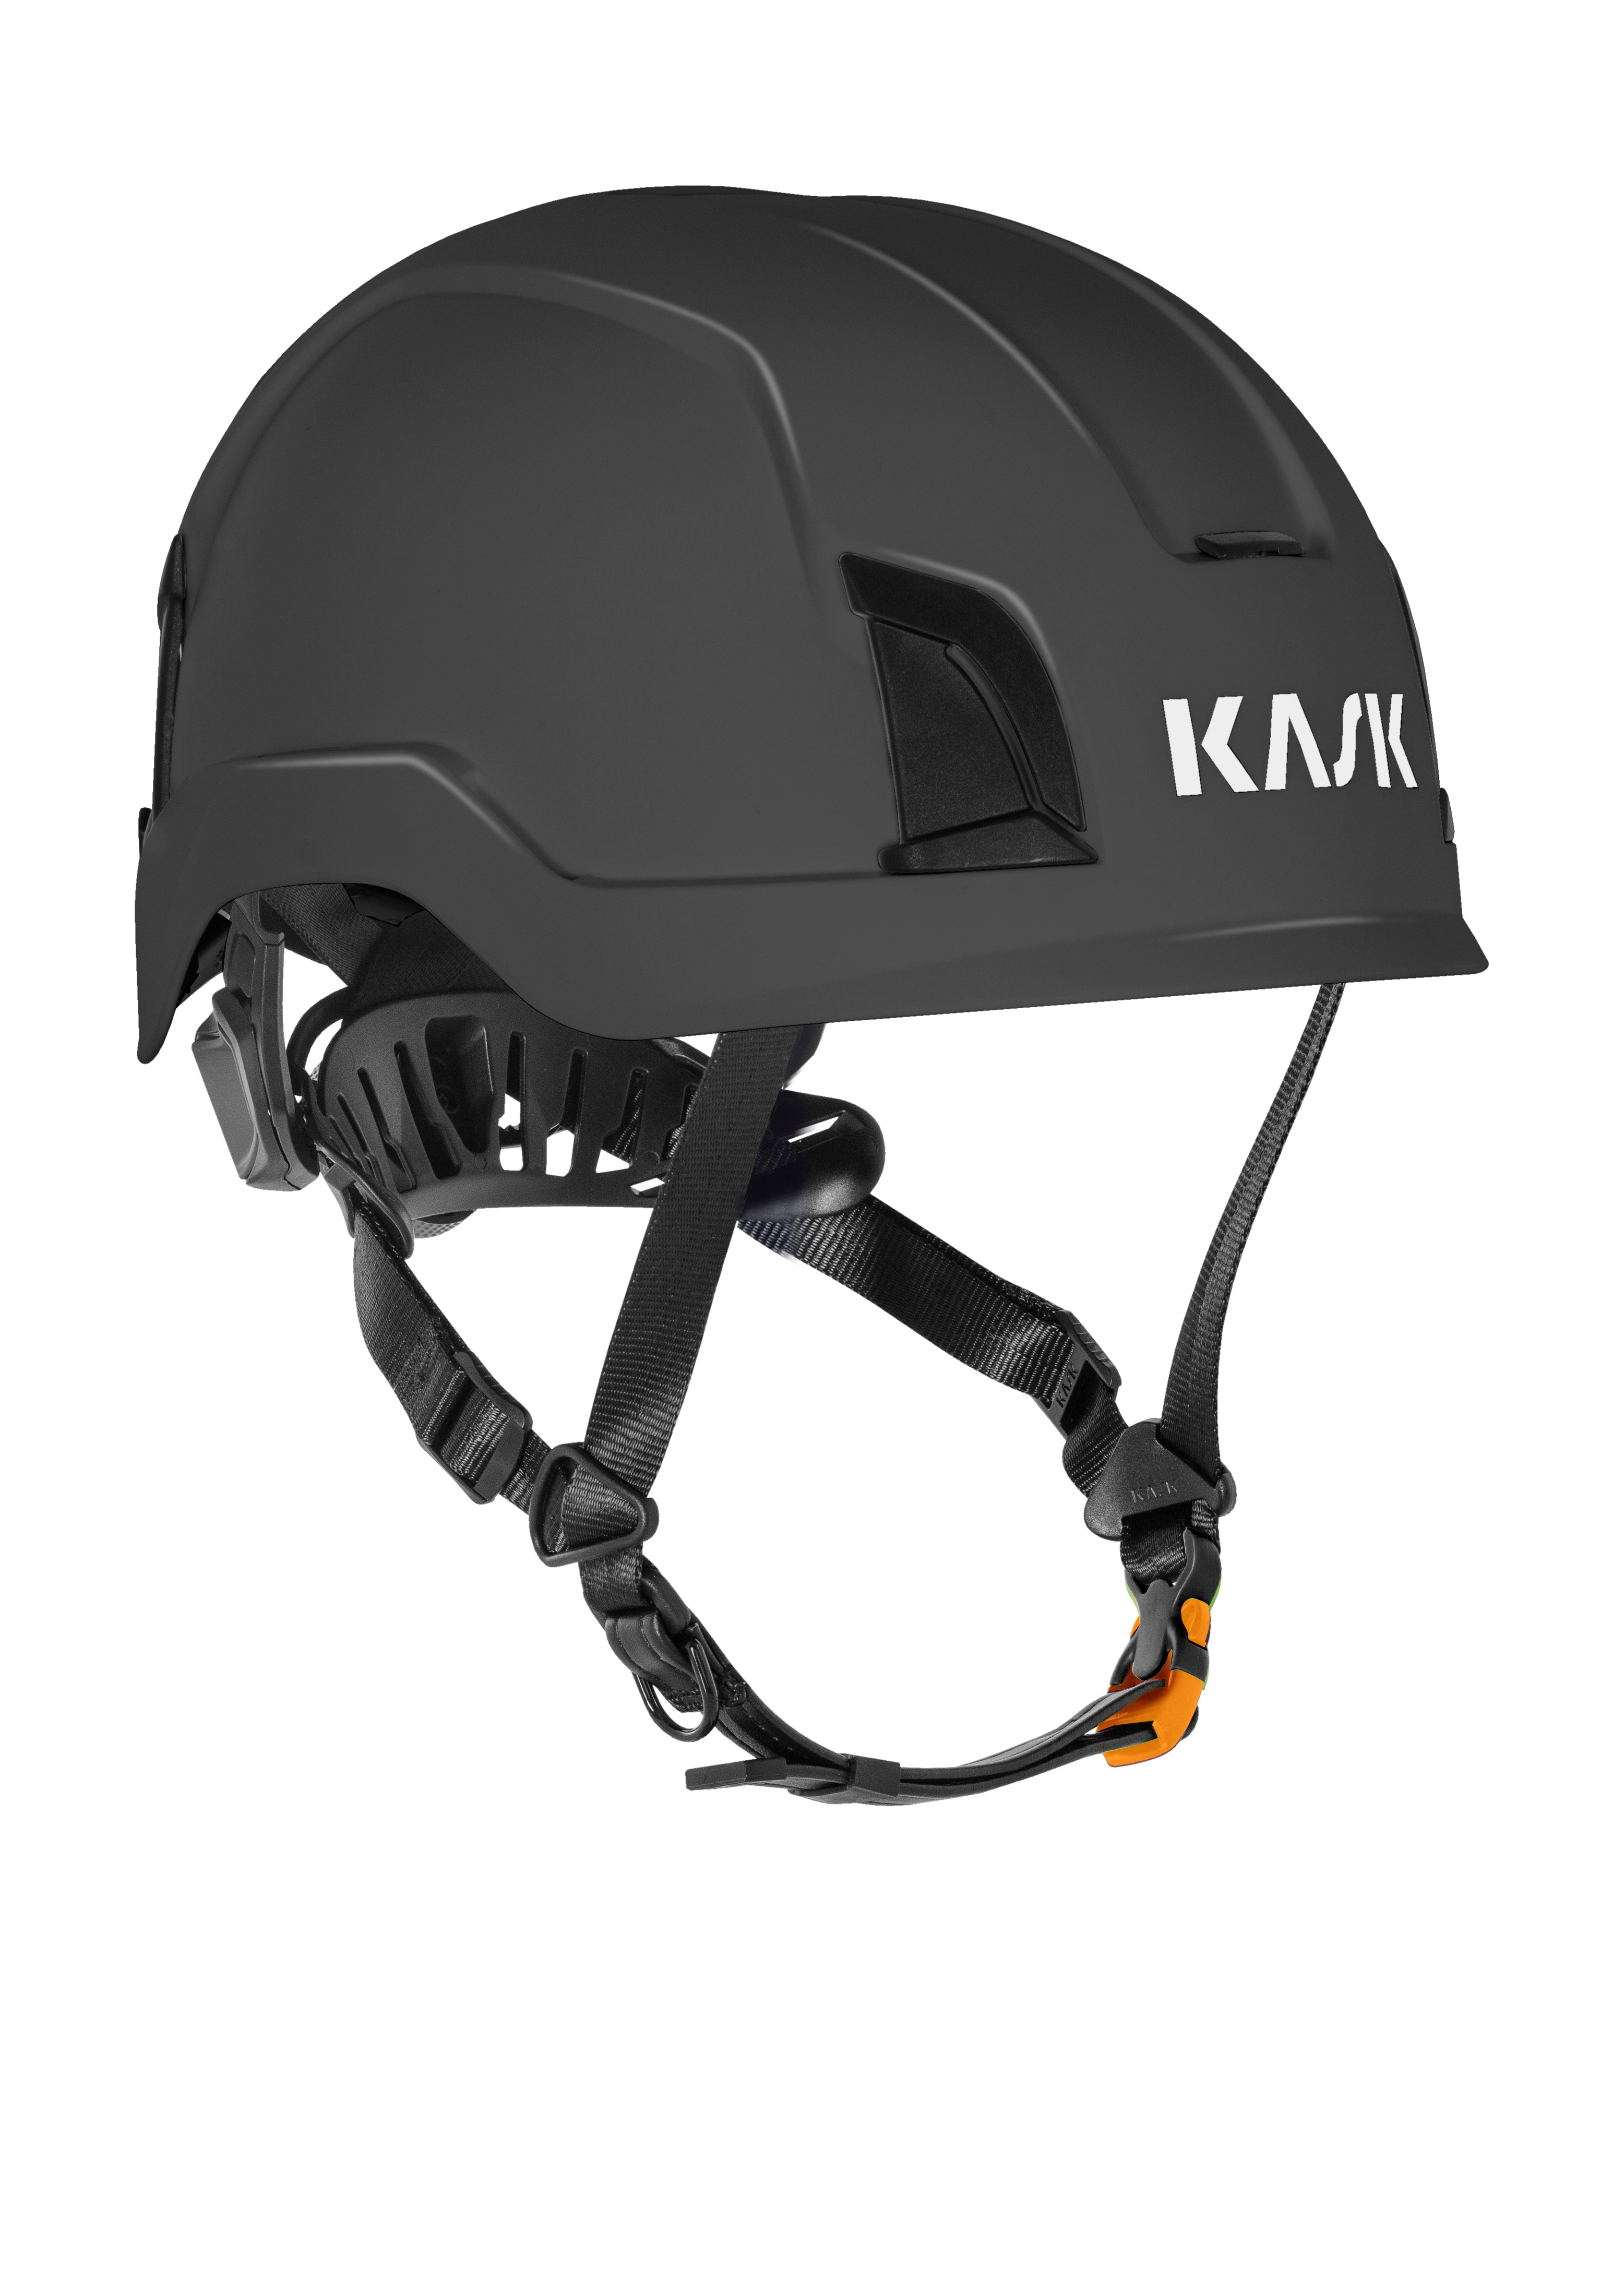 KASK Zenith X Helmet EN397 EN50365